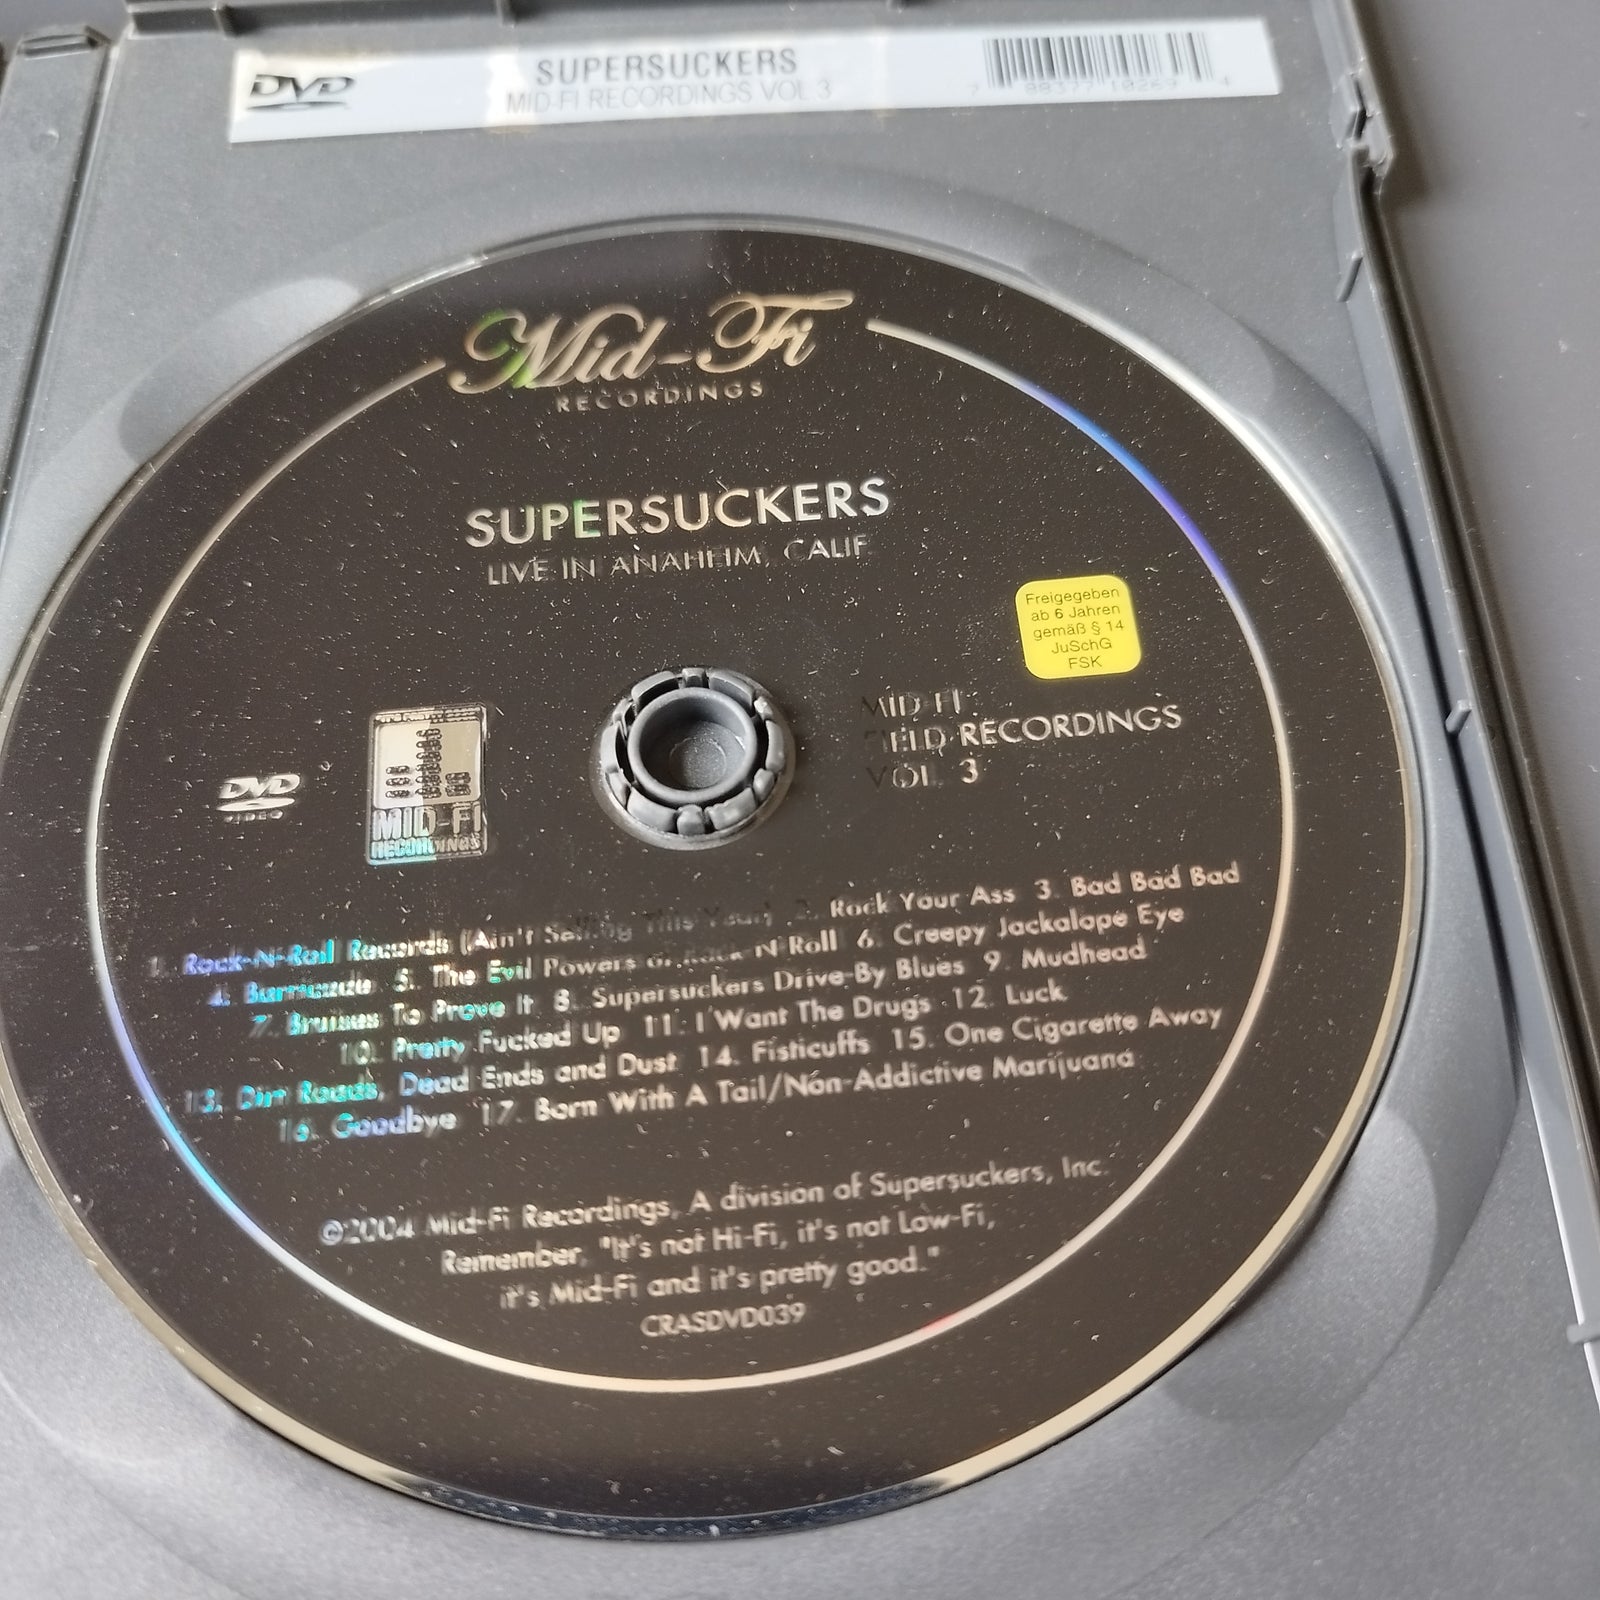 SUPERSUCKERS.DVD: Live in Anaheim Concert, rock